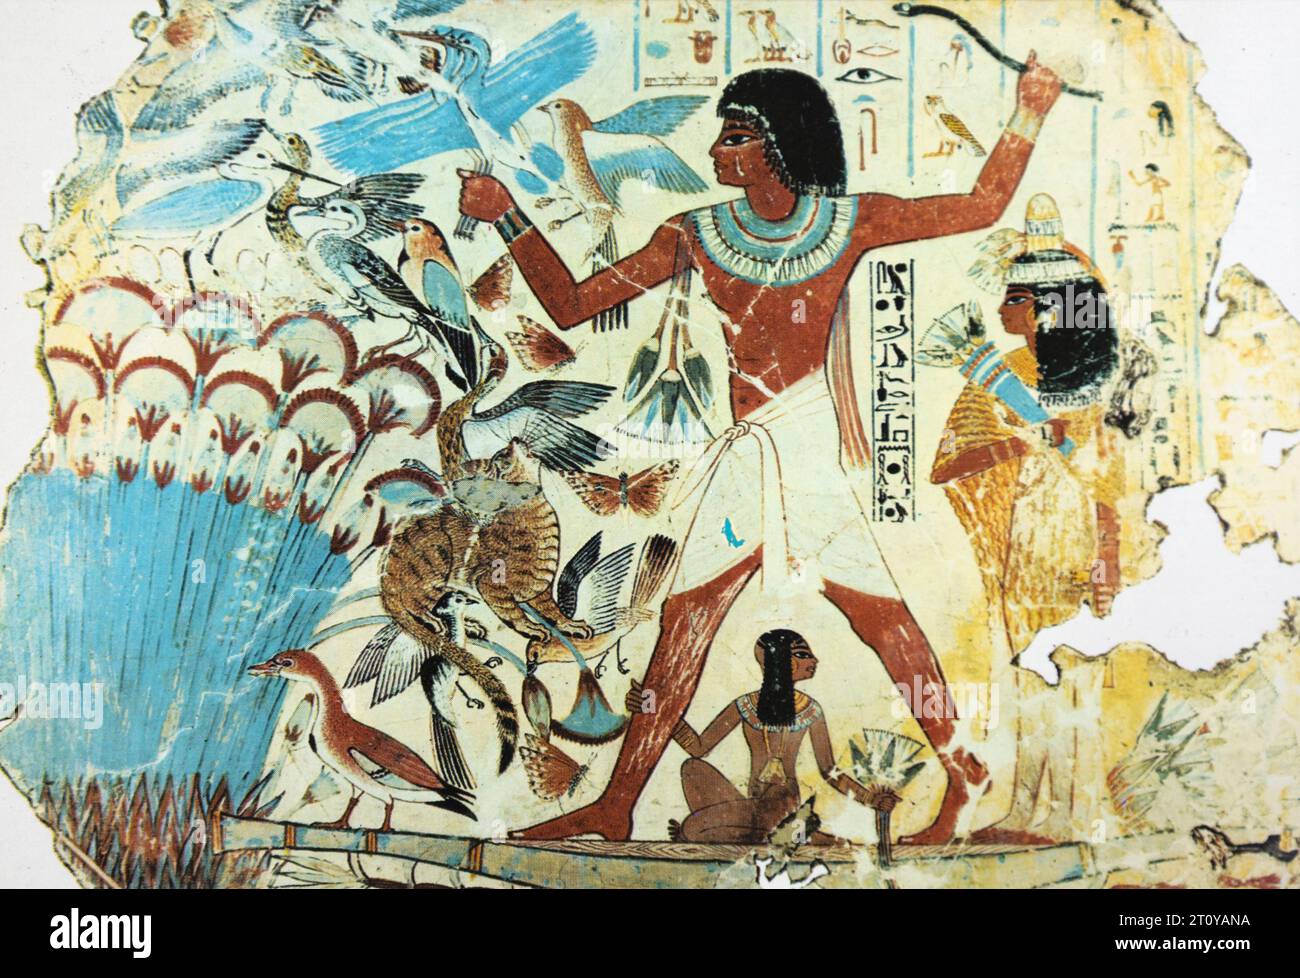 Peinture murale de Nebamun chassant de la tombe de Nebamun, Égypte ; image de carte postale en demi-ton. Banque D'Images